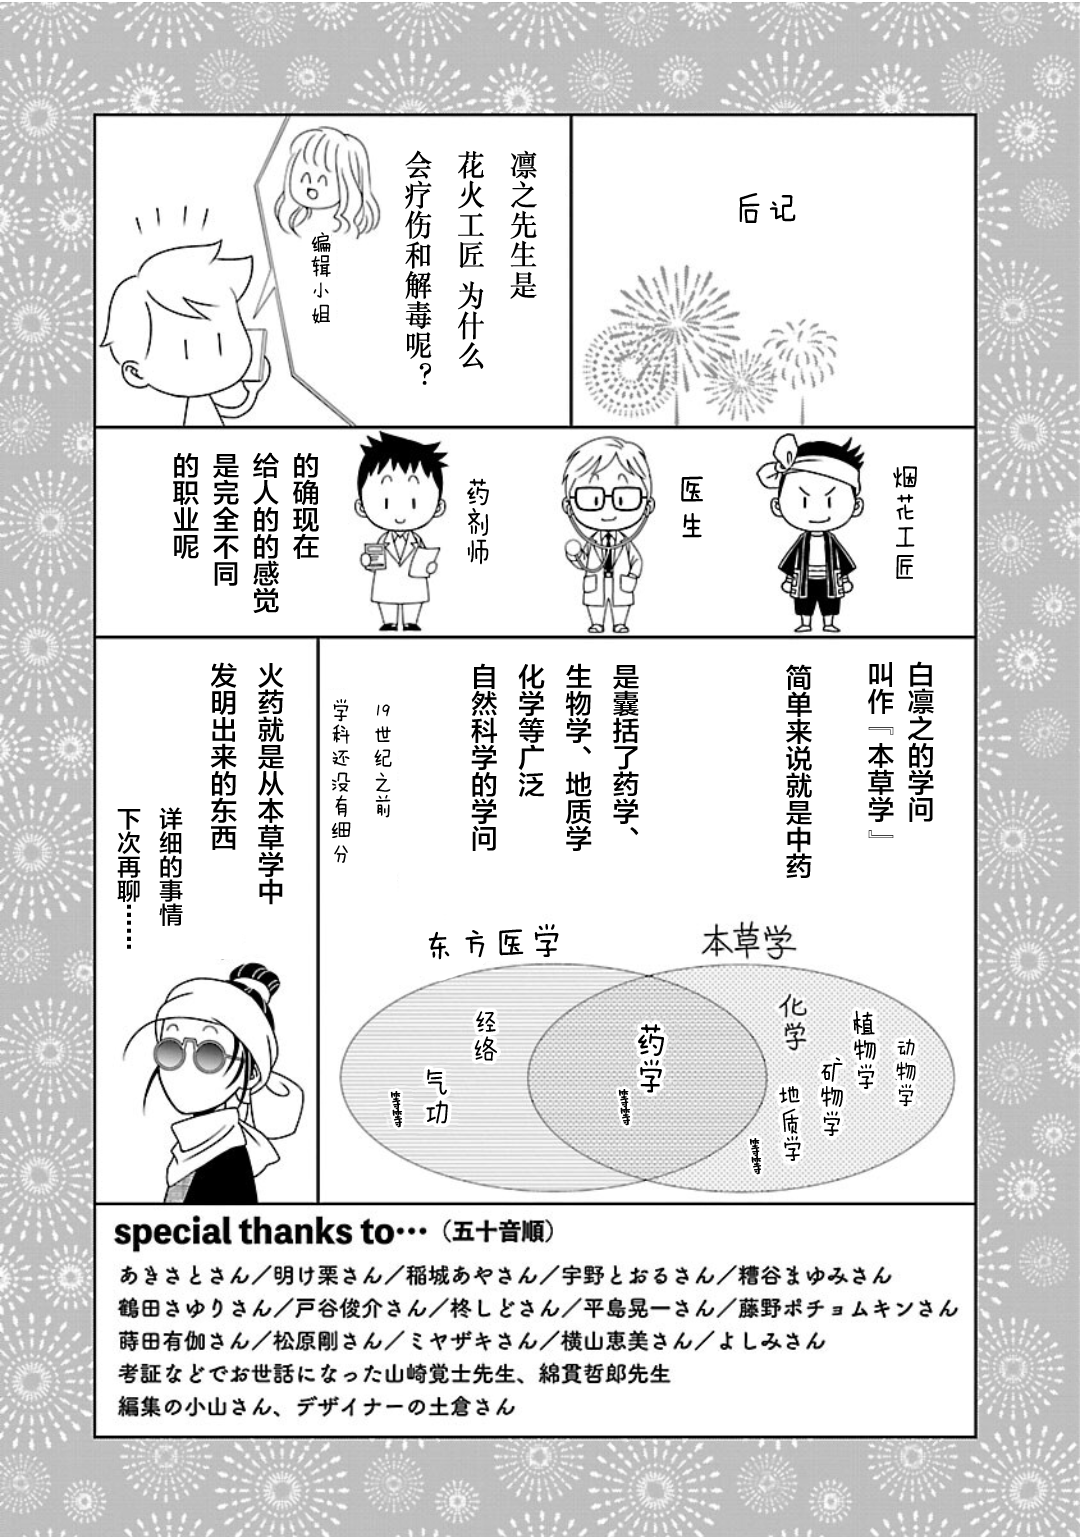 天上恋歌~金之公主与火之药师~漫画,第一卷后记1图